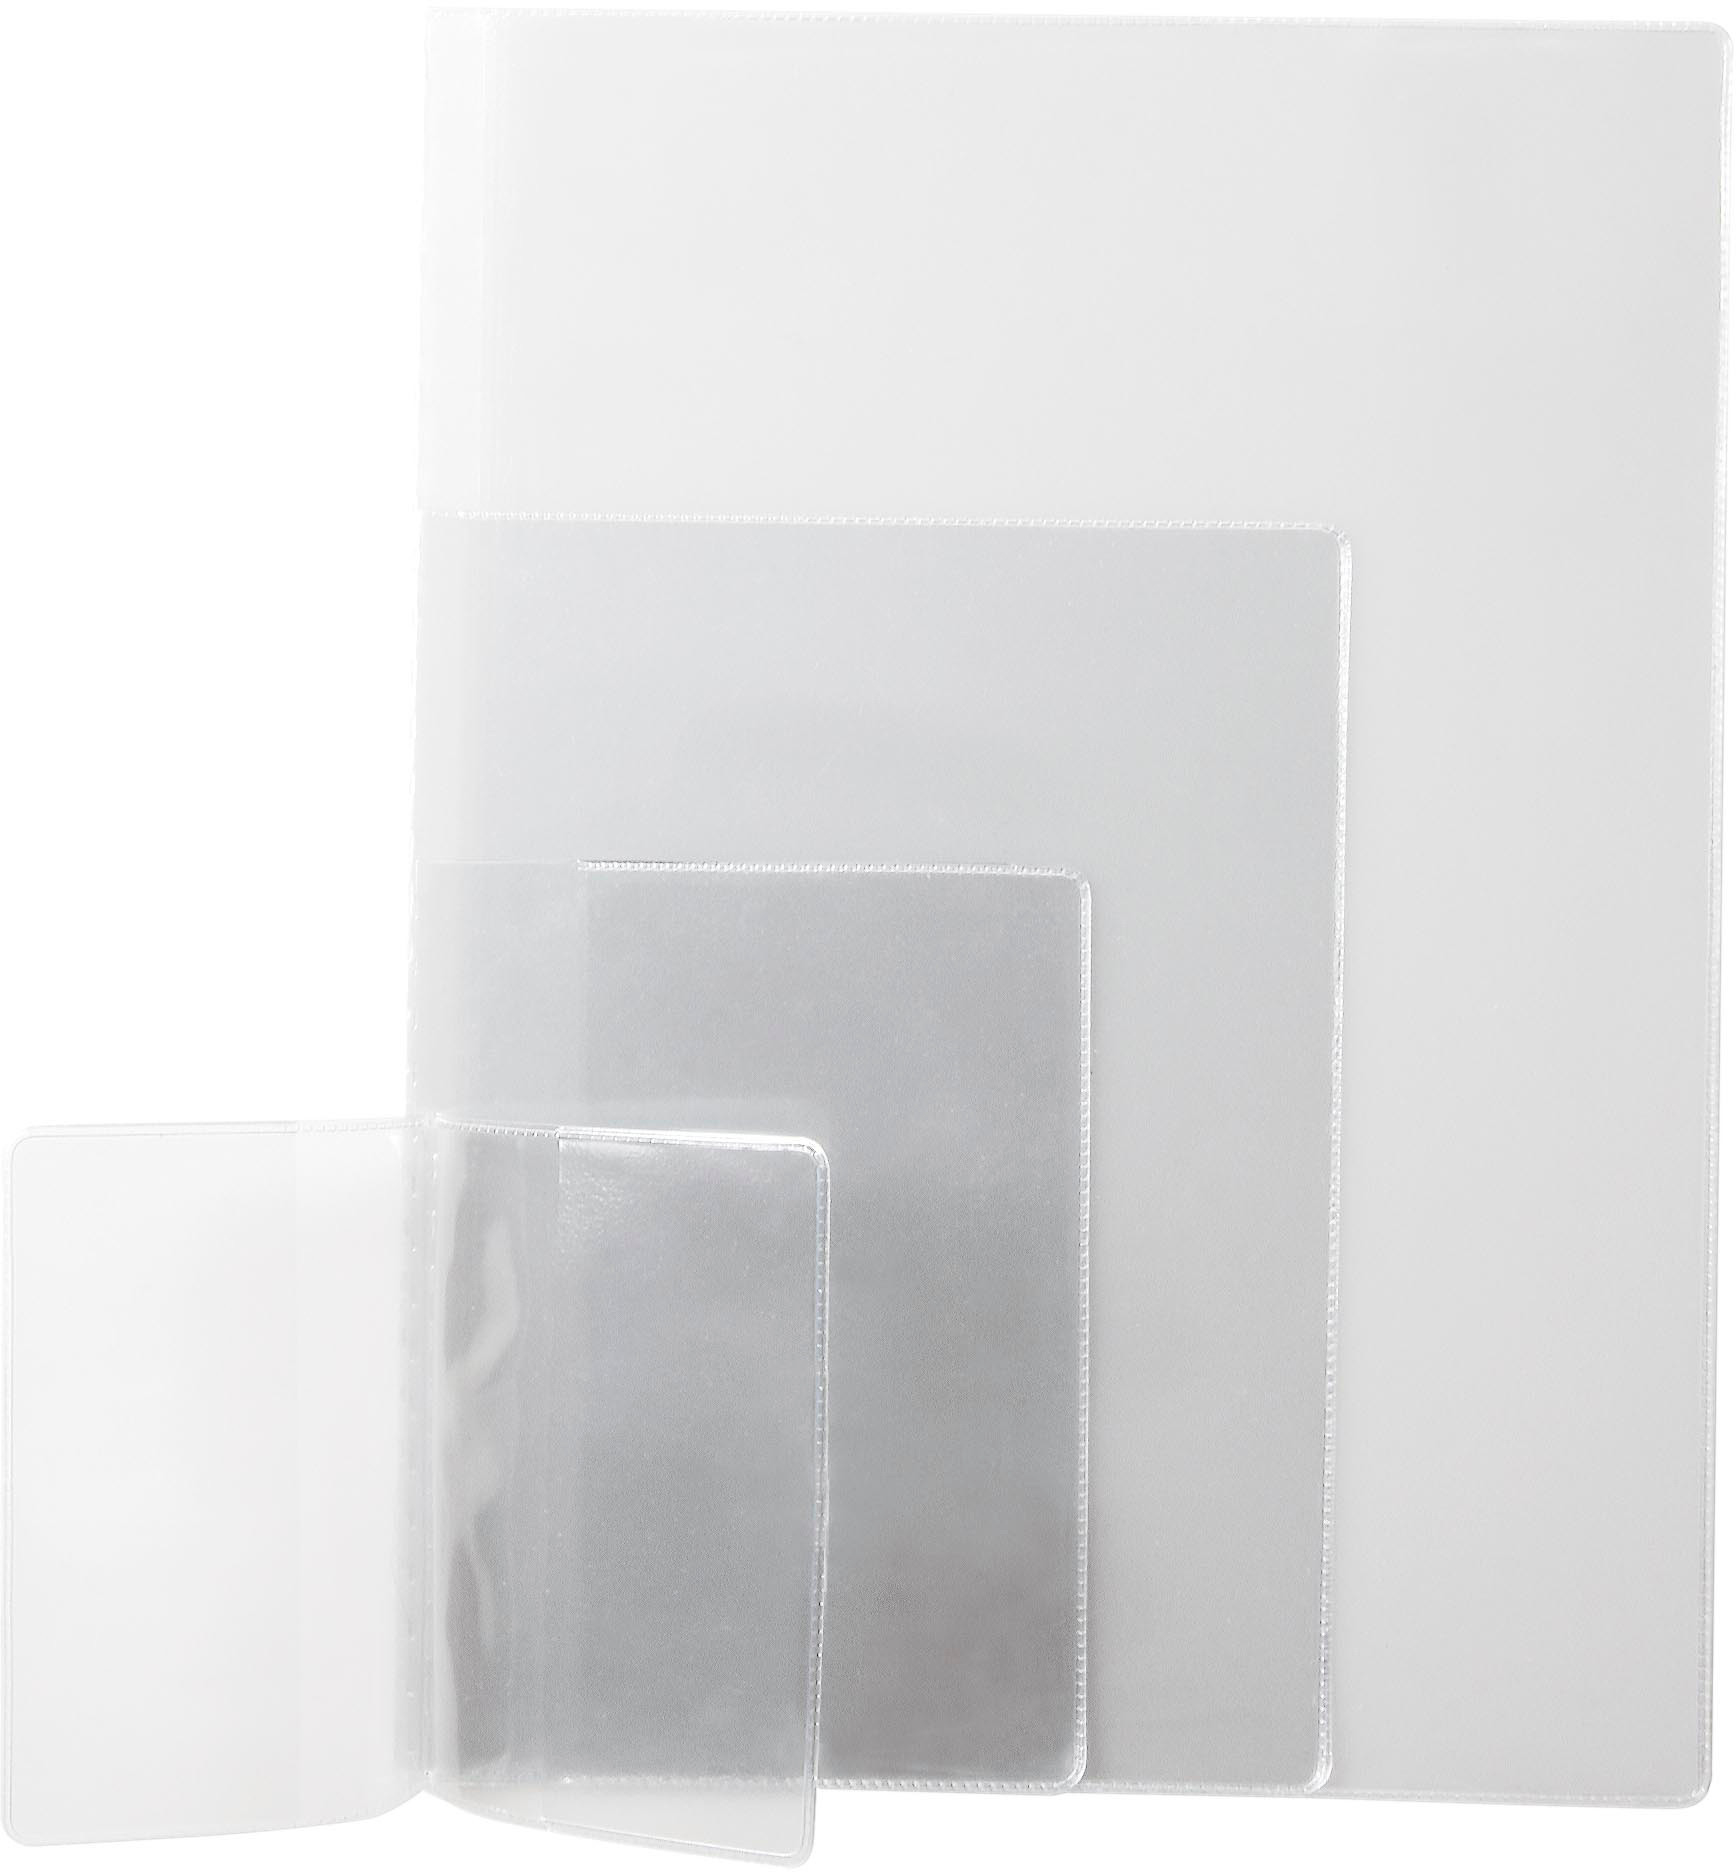 DUFCO Étui plastique A6x2,PVC 5046.005 150µ,transparent,5 pièces